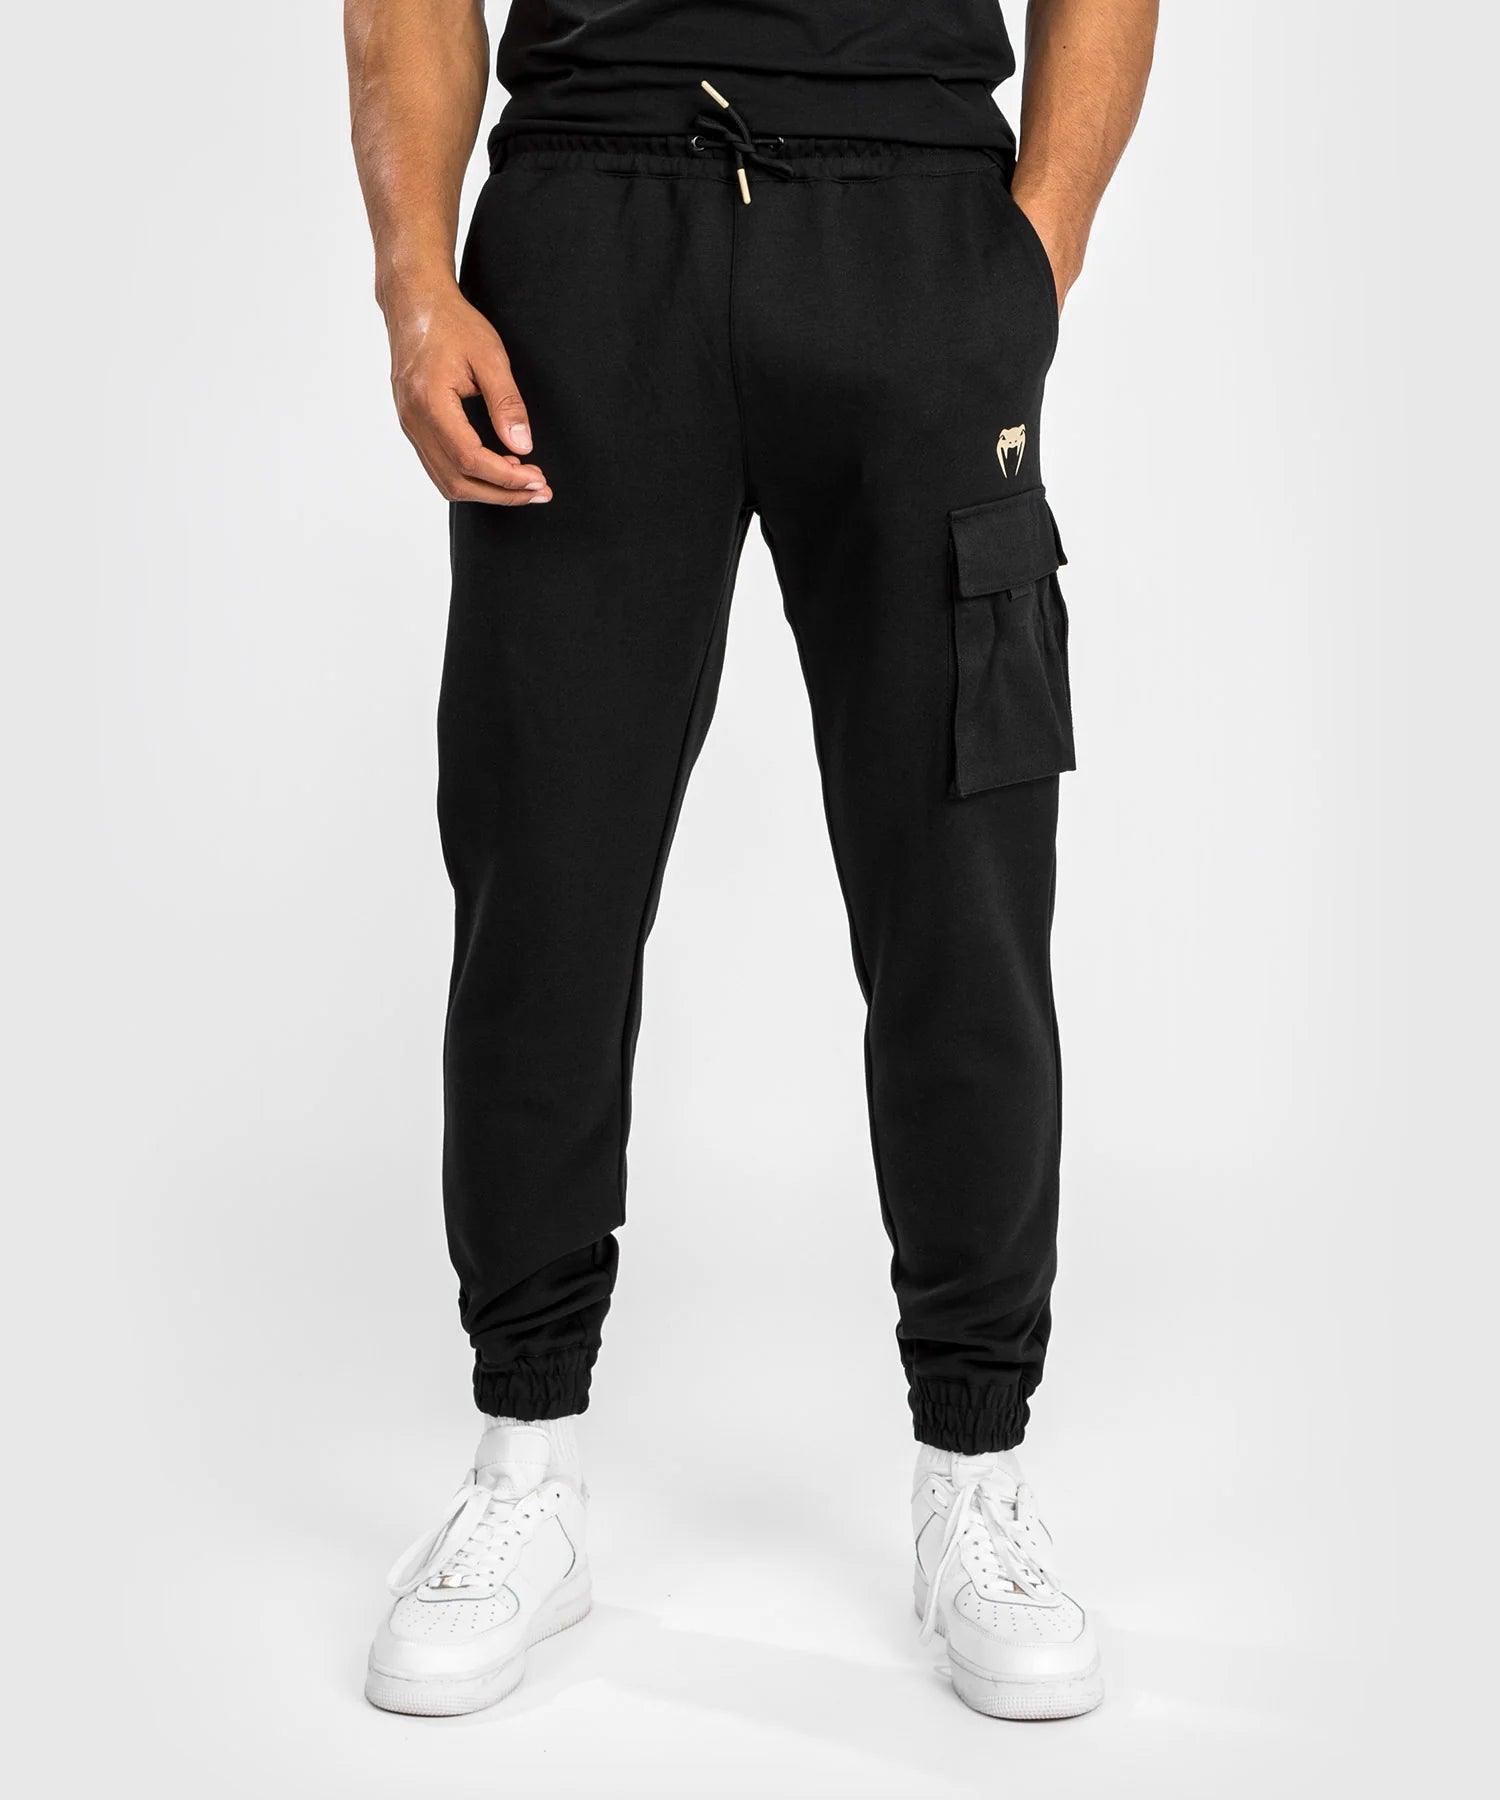 Pantalon de survêtement Venum Tecmo 2.0 - Black